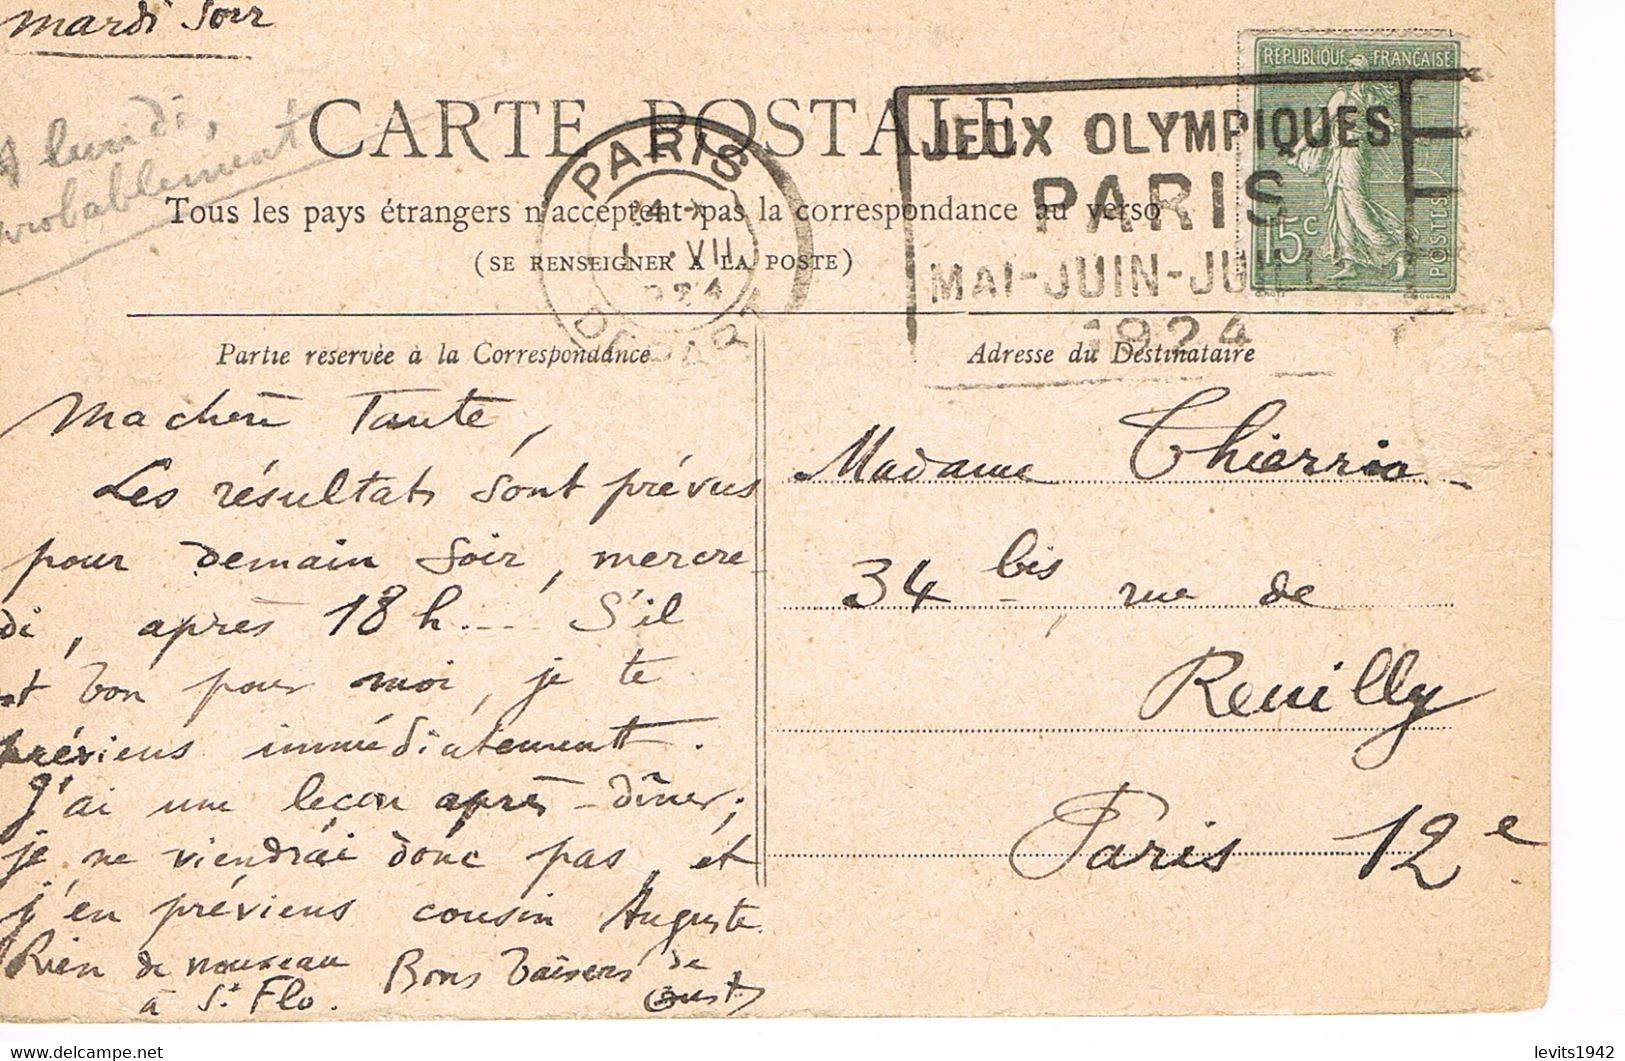 JEUX OLYMPIQUES 1924 -  MARQUE POSTALE - ESCRIME - TIR DE CHASSE - POLO - JOUR DE COMPETITION - 01-07 - - Sommer 1924: Paris